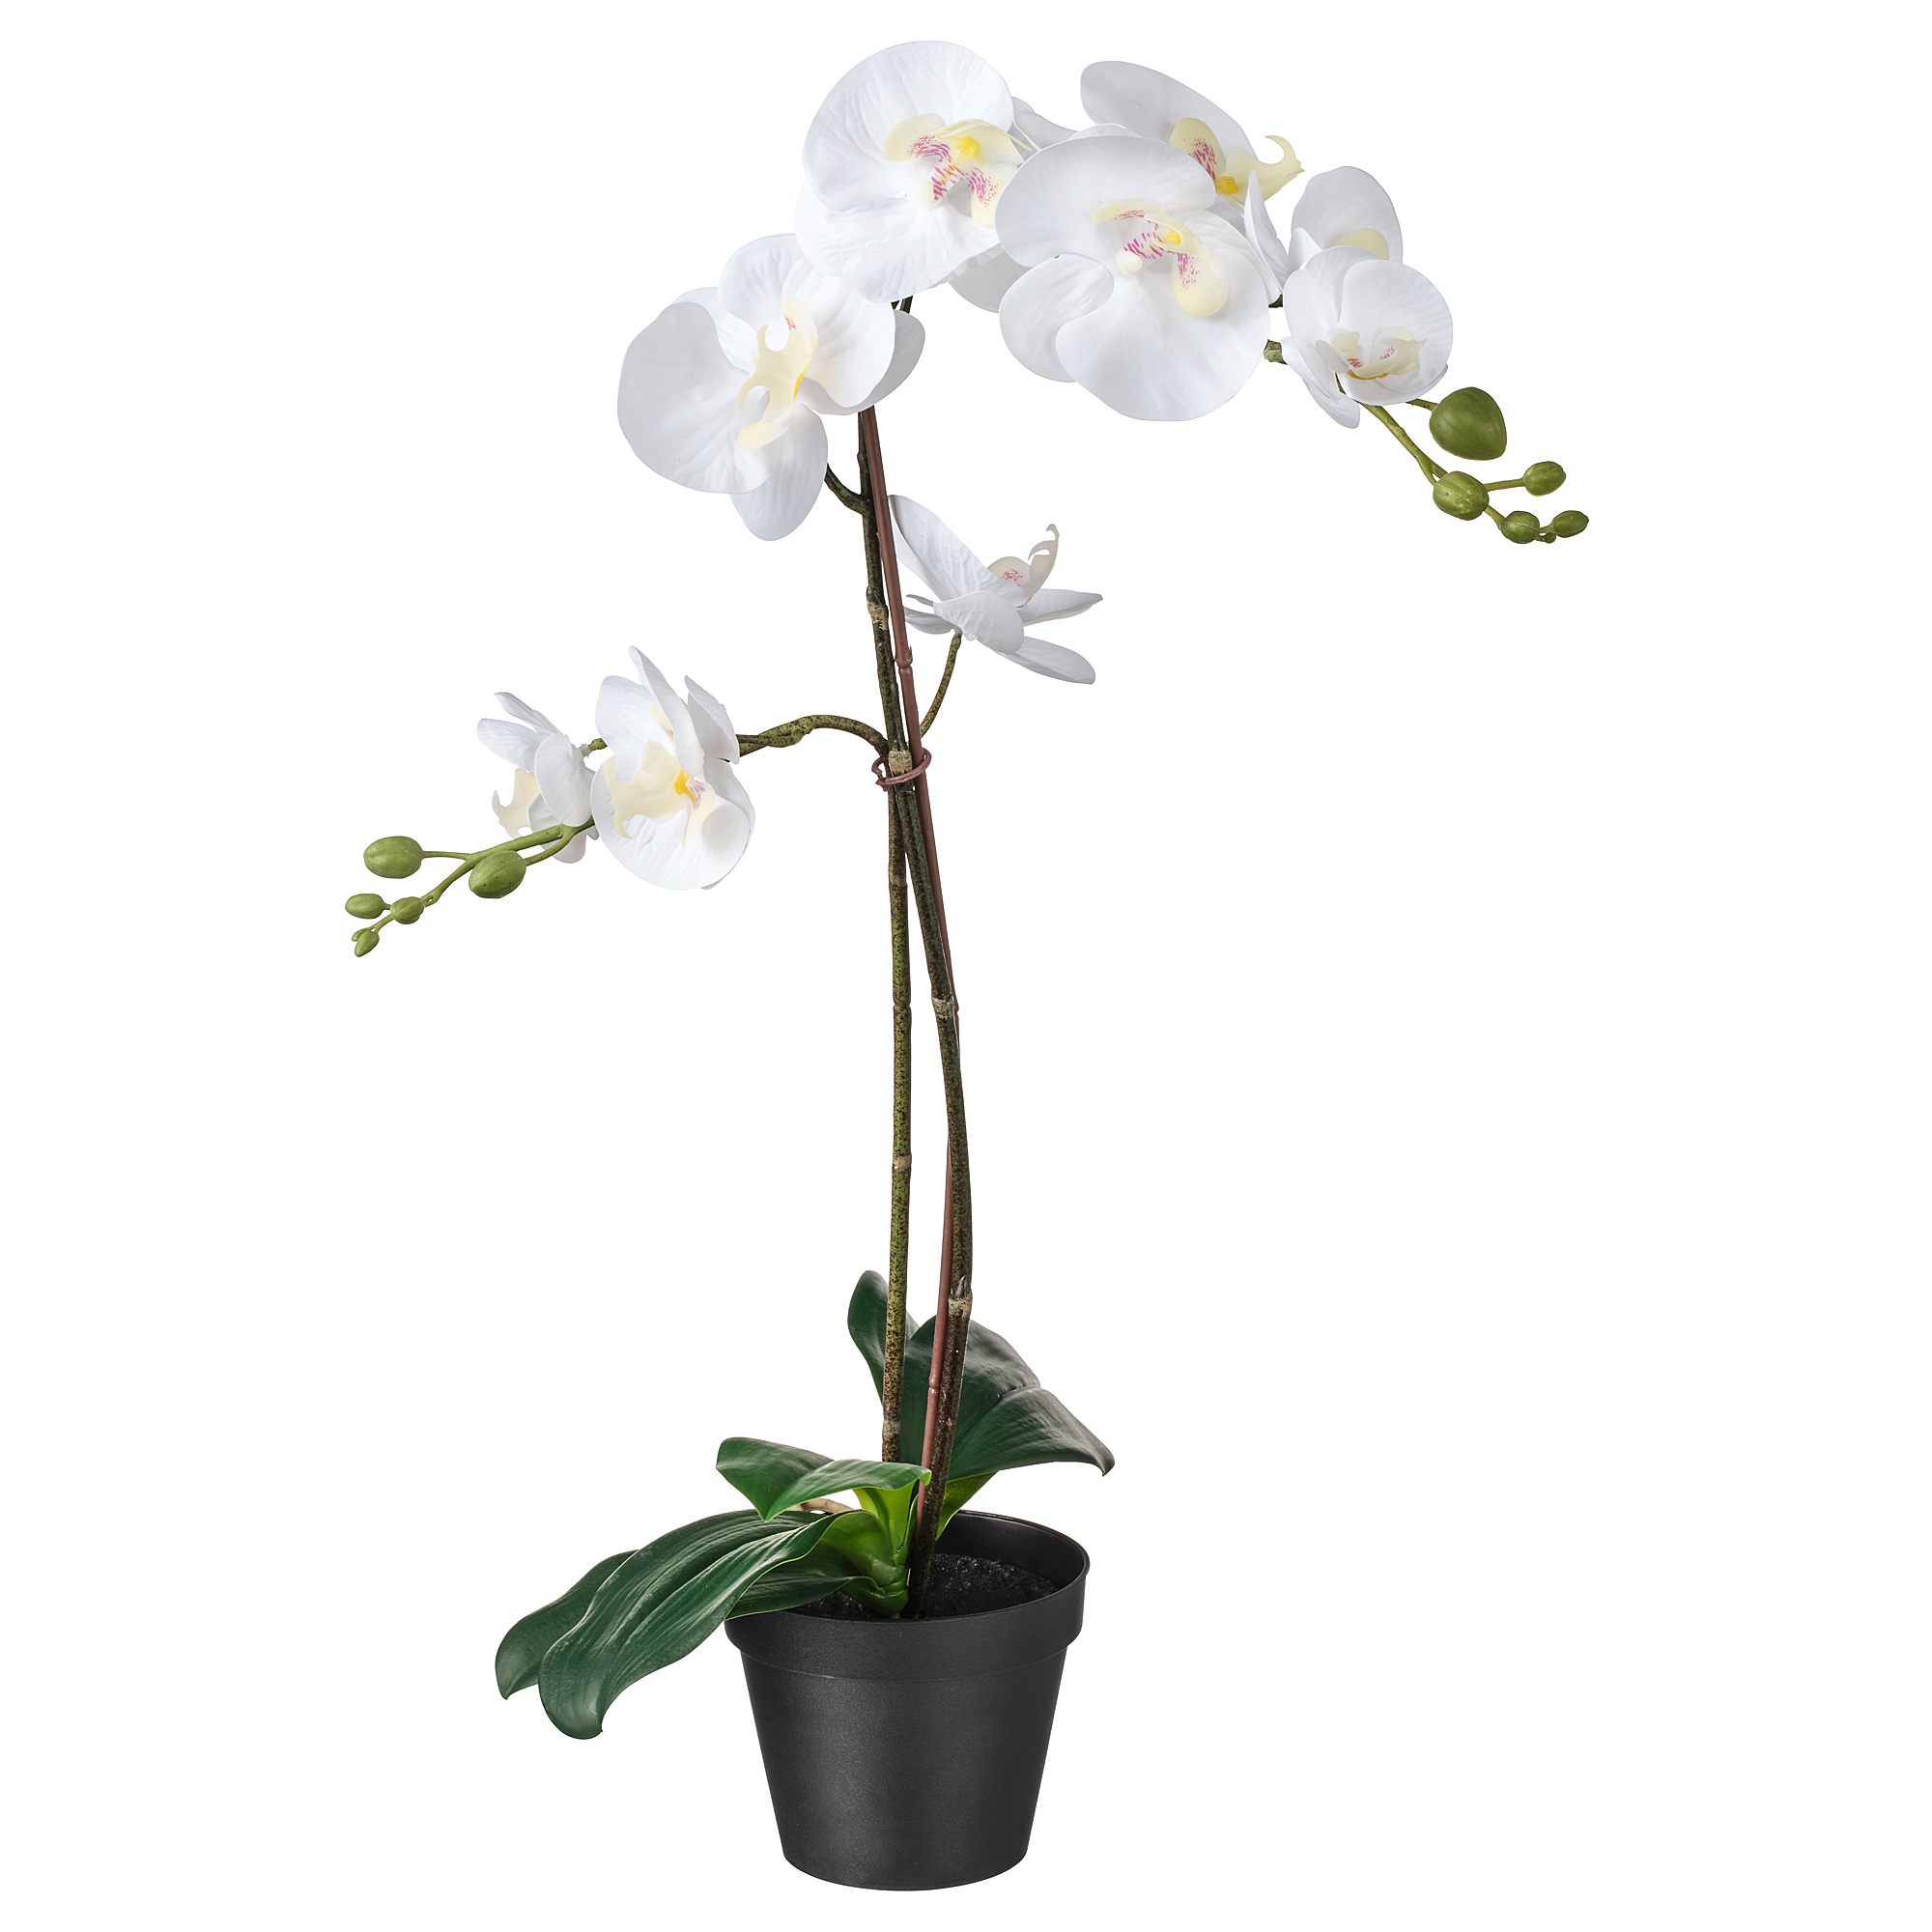 Орхидея в горшке купить в интернет. Искусственный цветок икеа Fejka. Фаленопсис сингл. Орхидея enjoy Orchids.